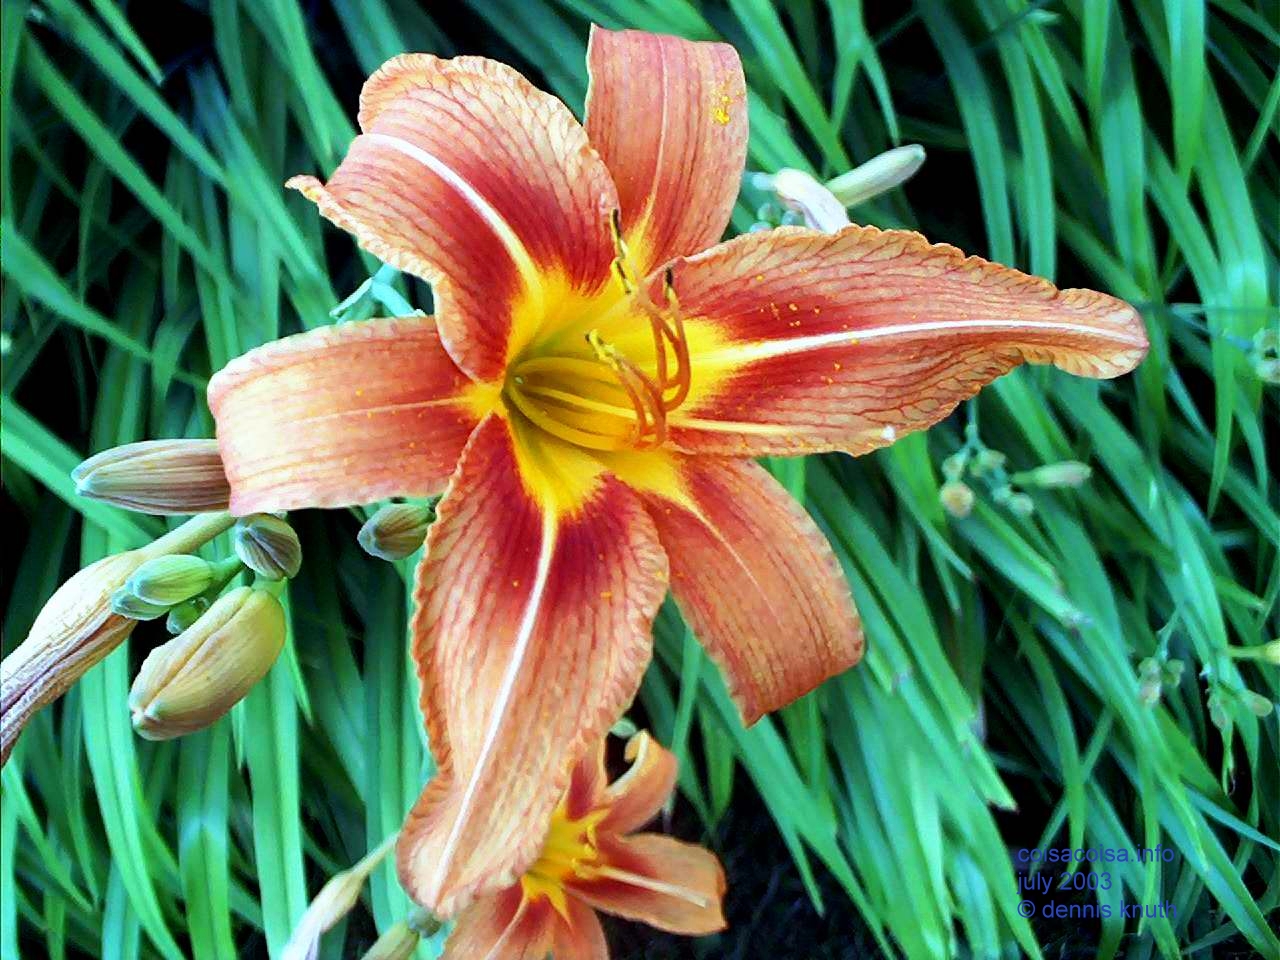 Beauty of Sherri's Lily in 2003